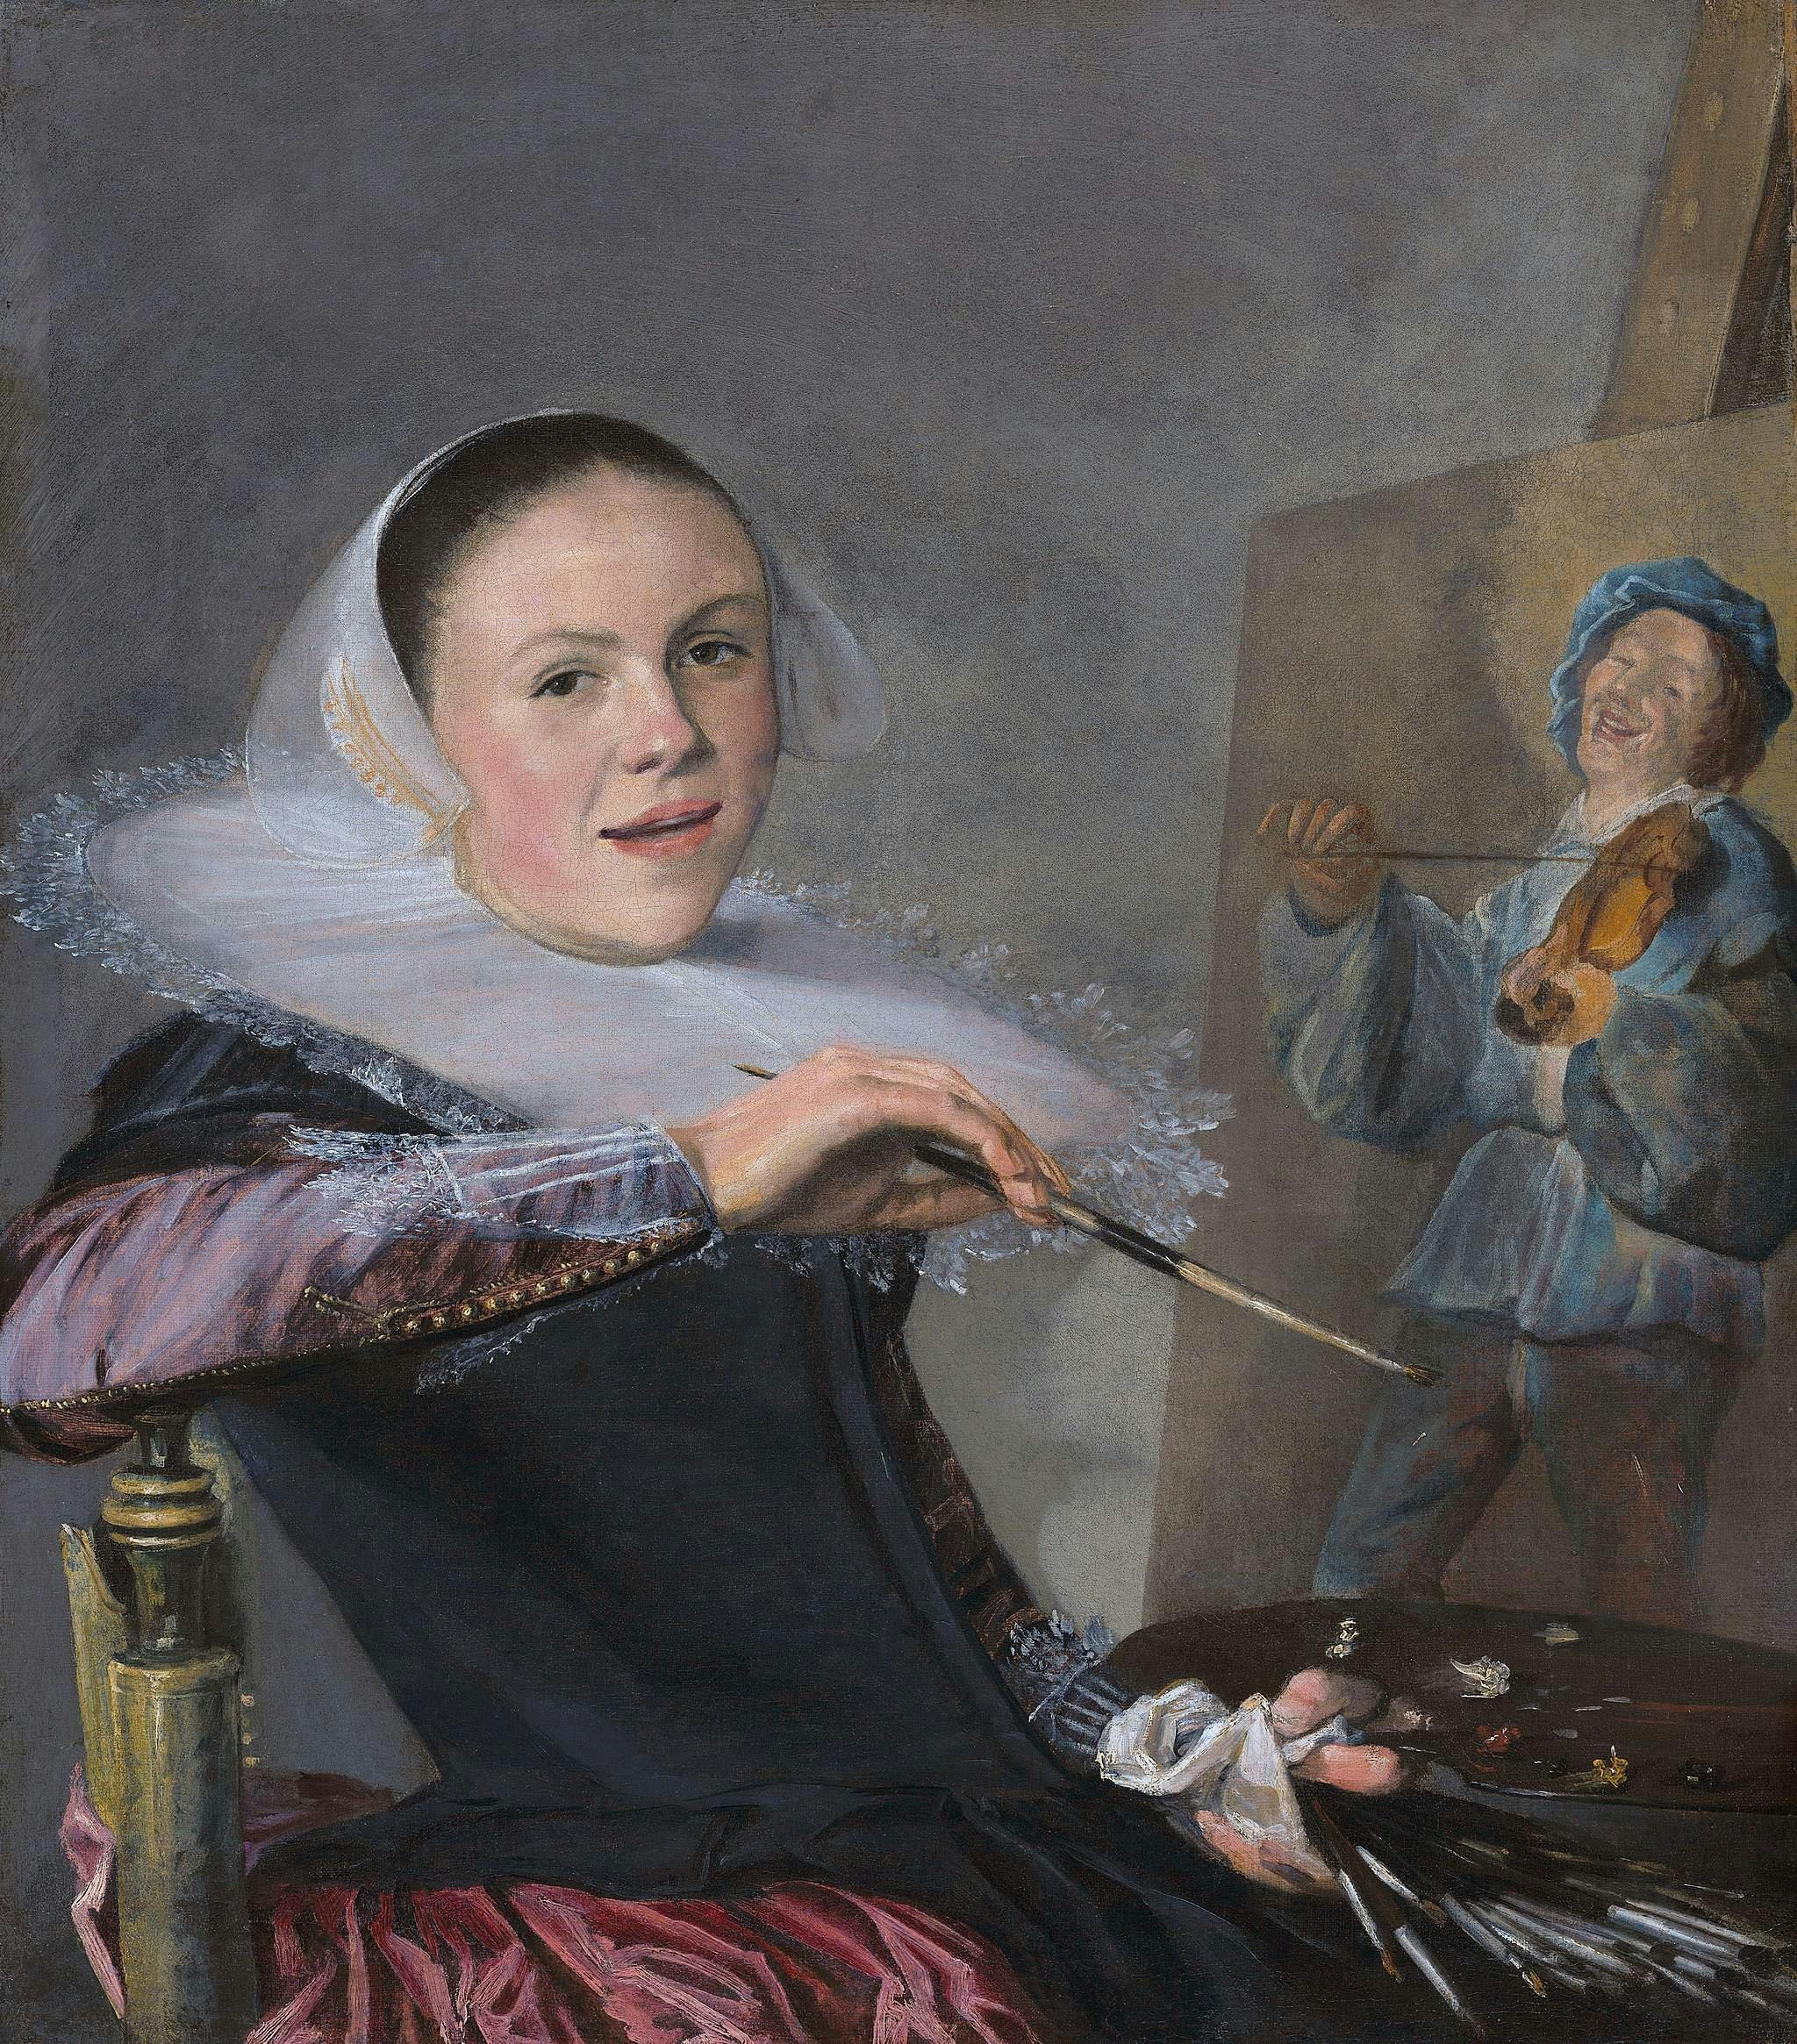 Zelfportret van schilder Judith Leyster uit ongeveer 1630. Je ziet haar nonchalant aan het werk zittend bij een schildersdoek. Ze kijkt de toeschouwer recht aan. Het schilderij waar ze aan werkt is van een man die een viool-achtig instrument bespeelt. 